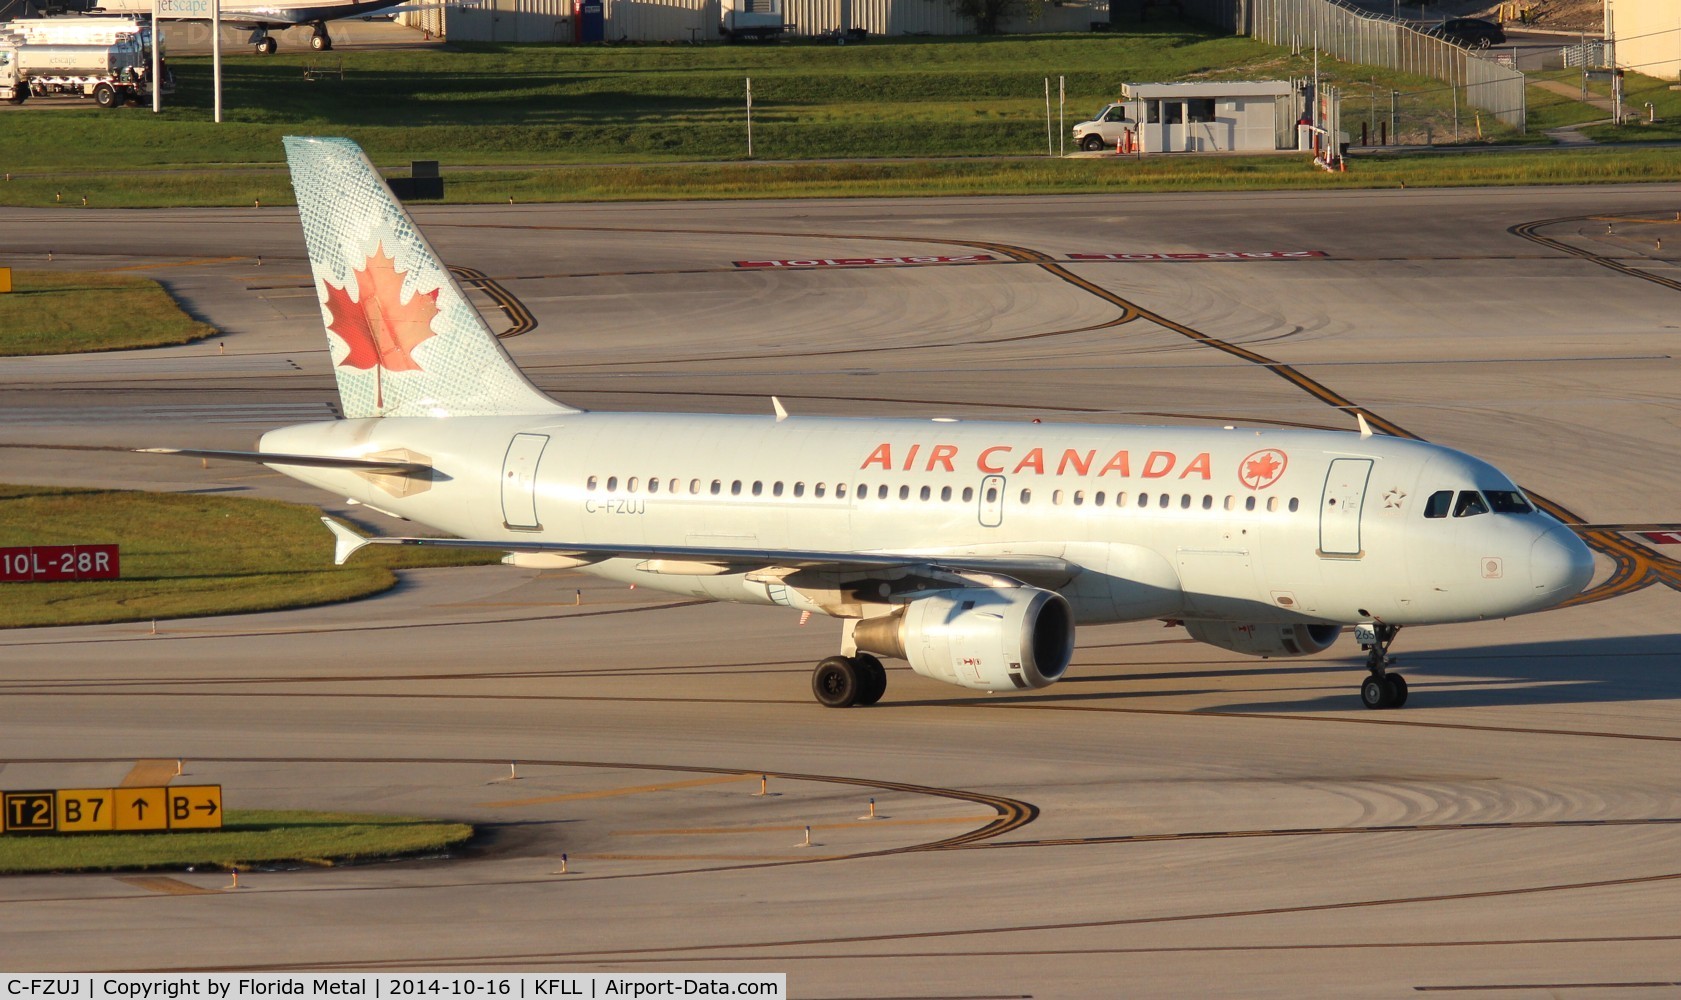 C-FZUJ, 1997 Airbus A319-114 C/N 719, Air Canada A319 zx